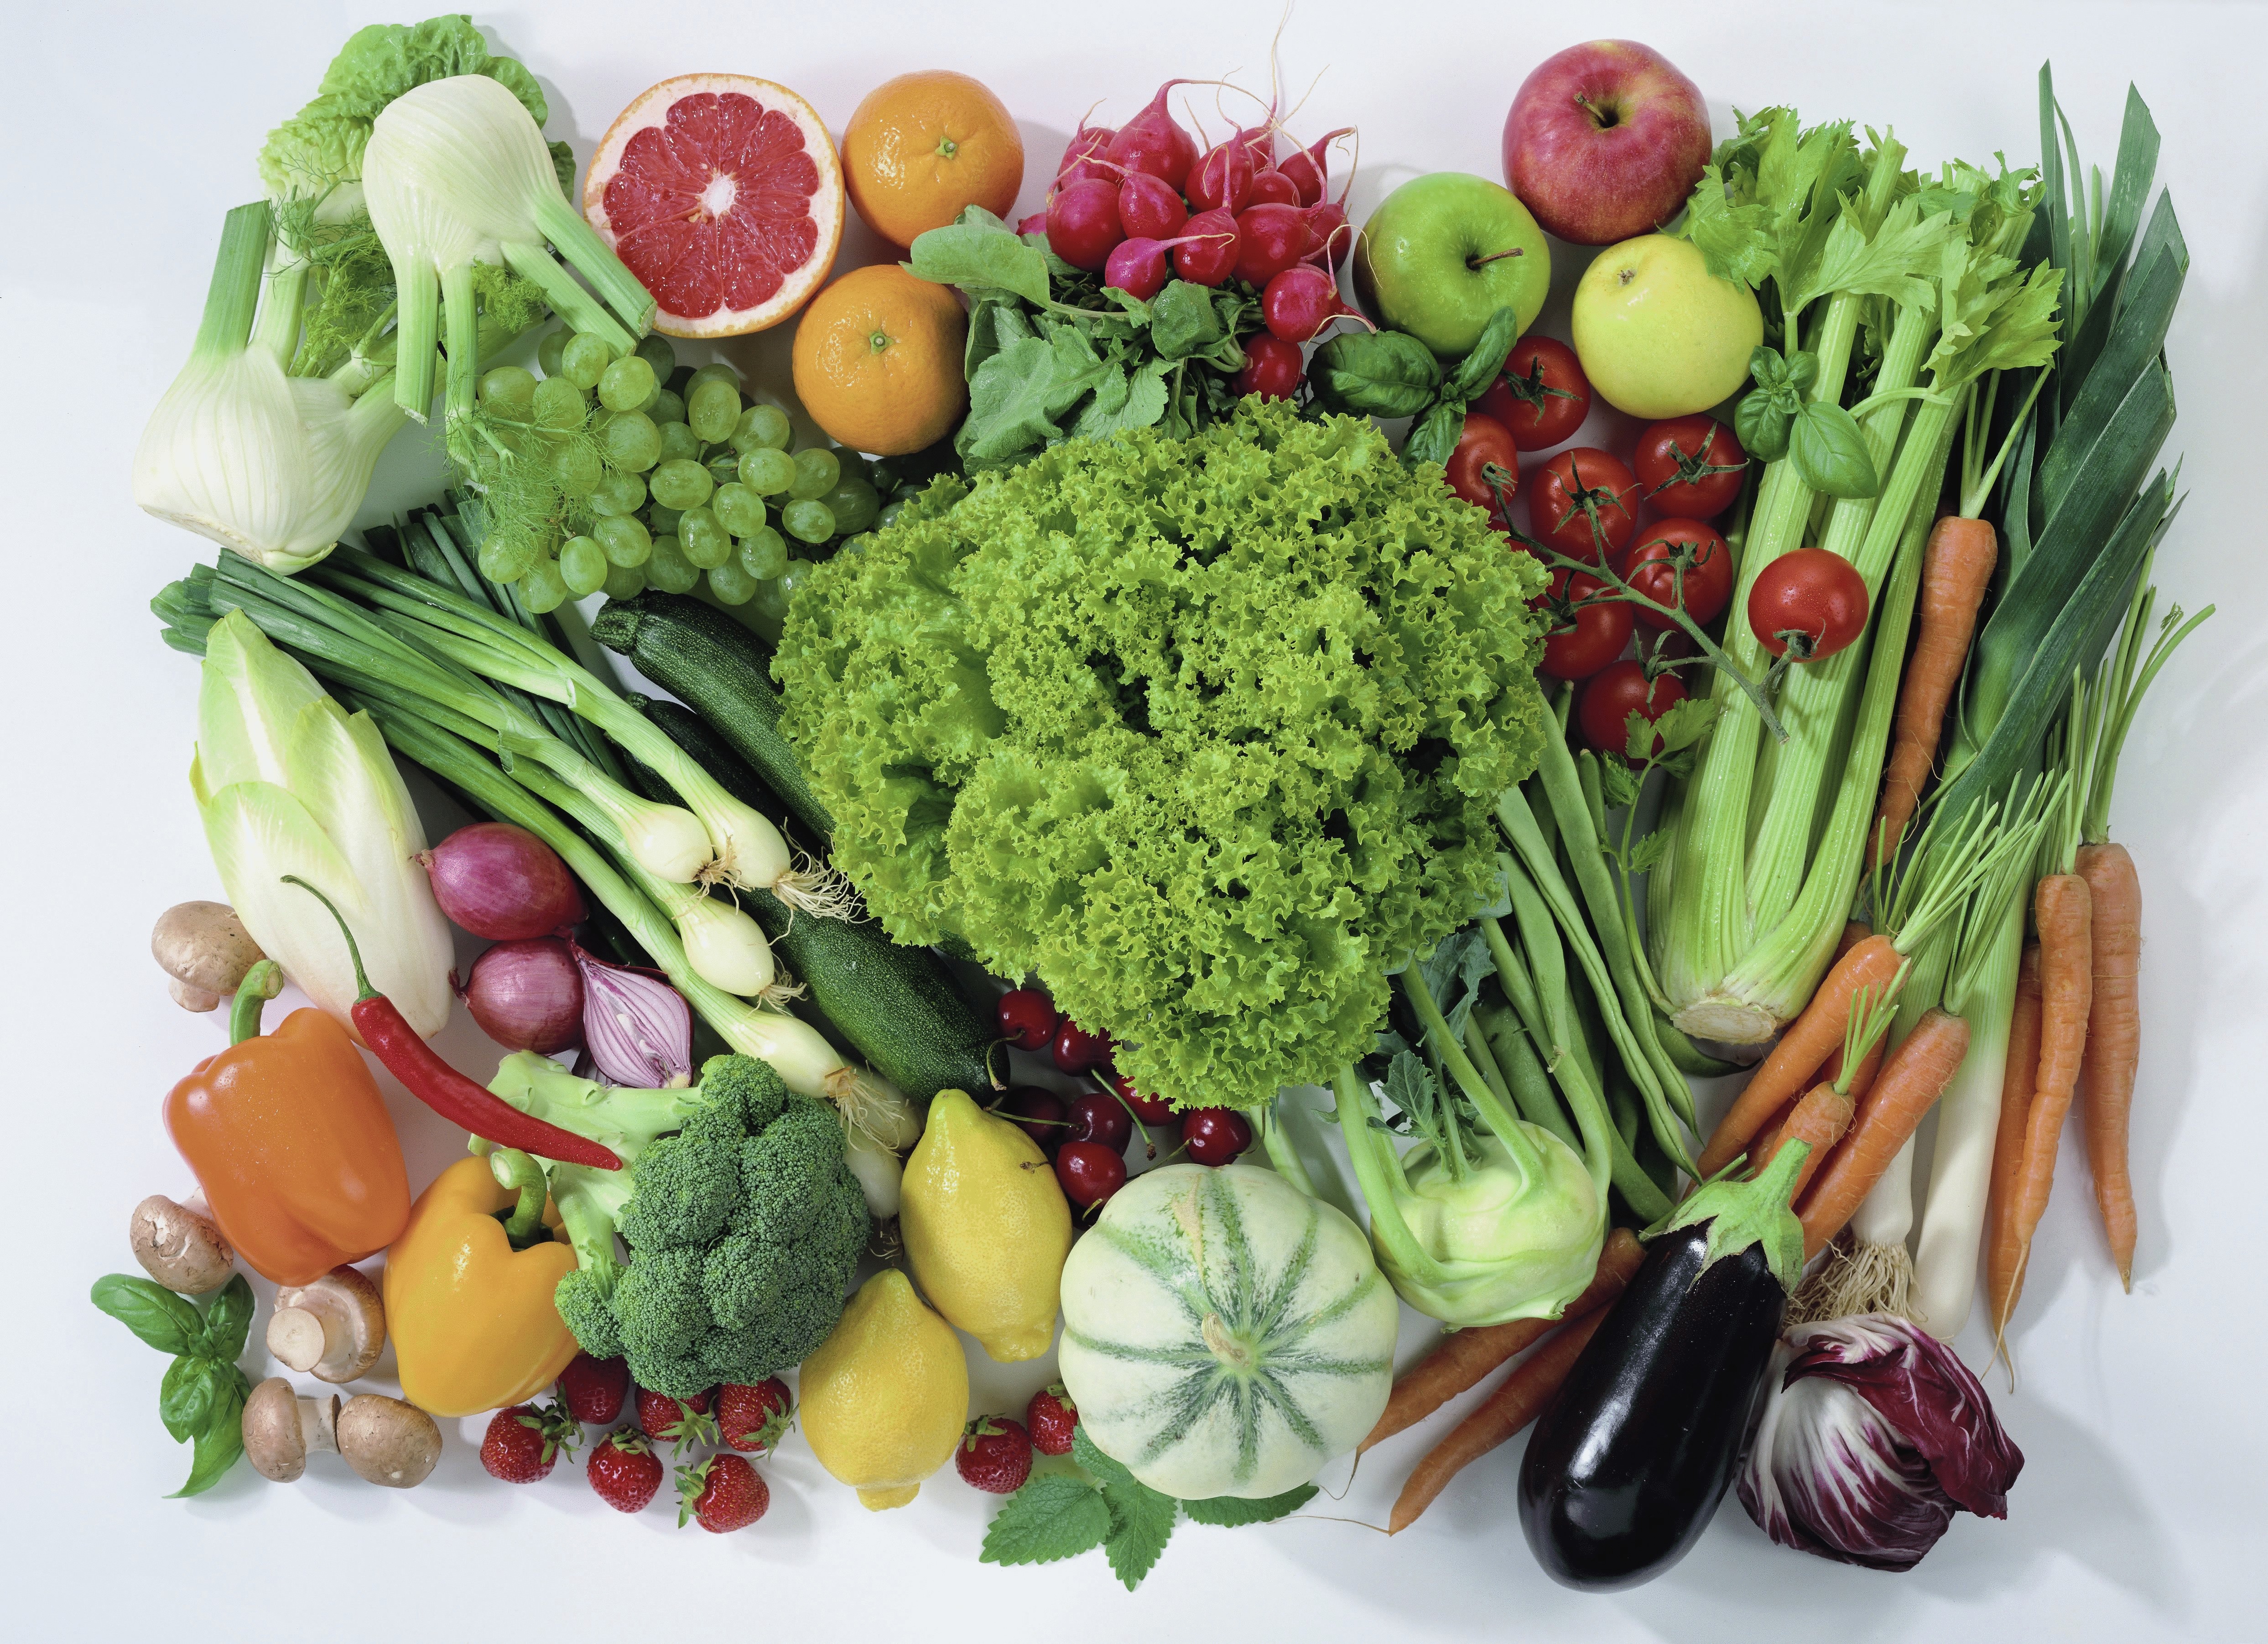 Товары и продукты для здоровья. Здоровое питание. Овощи и фрукты. Красивые овощи. Здоровая и полезная пища.